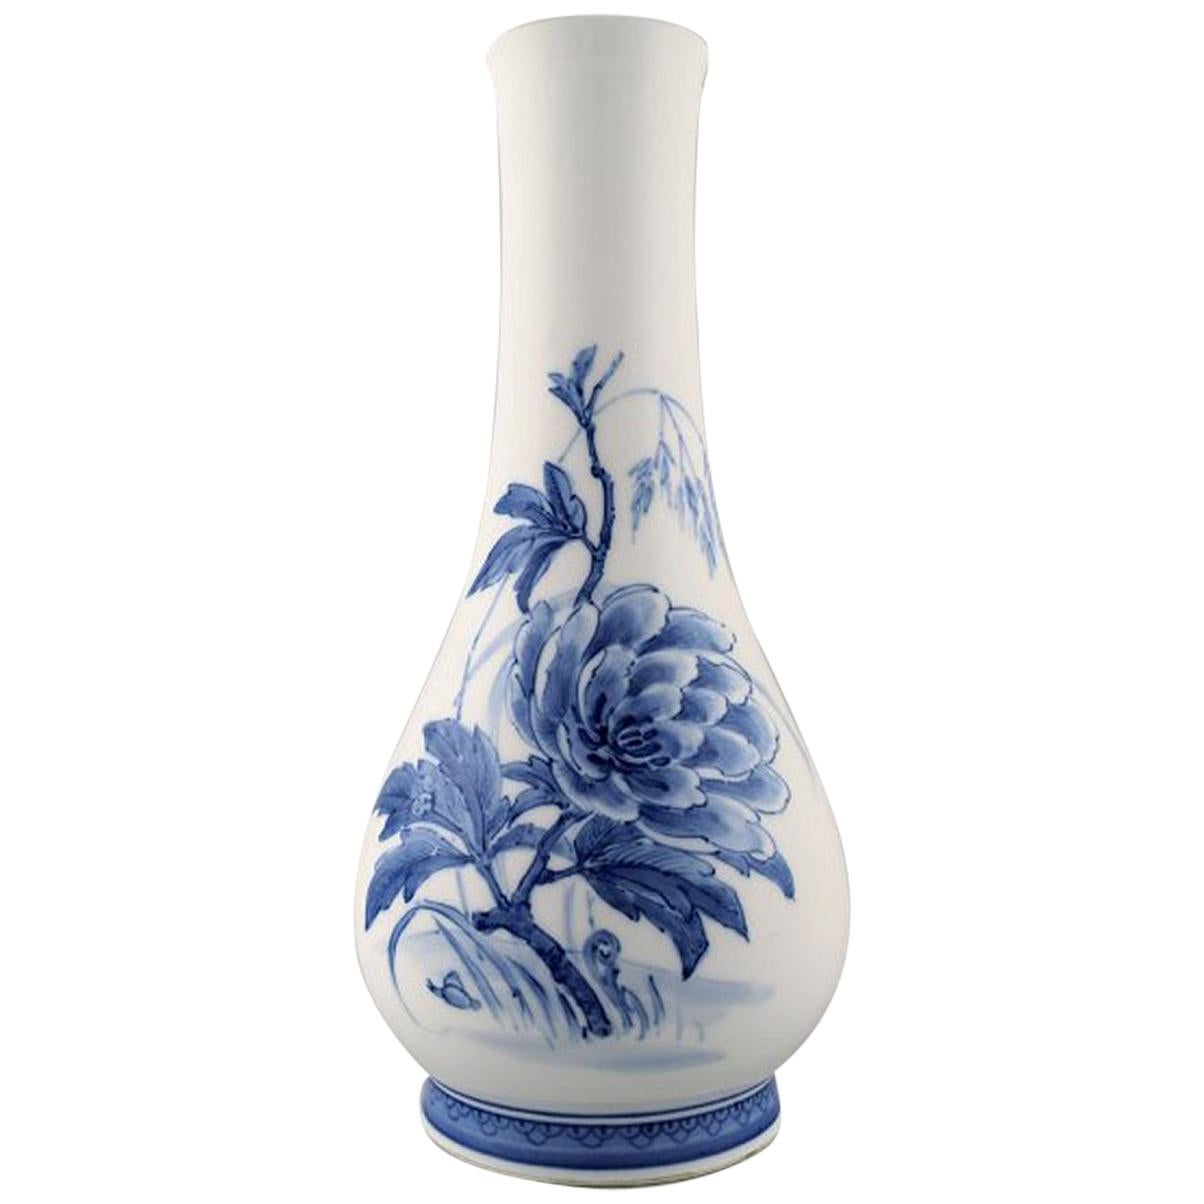 Oluf Jensen for Royal Copenhagen, Large Unique Porcelain Vase with Slim Neck